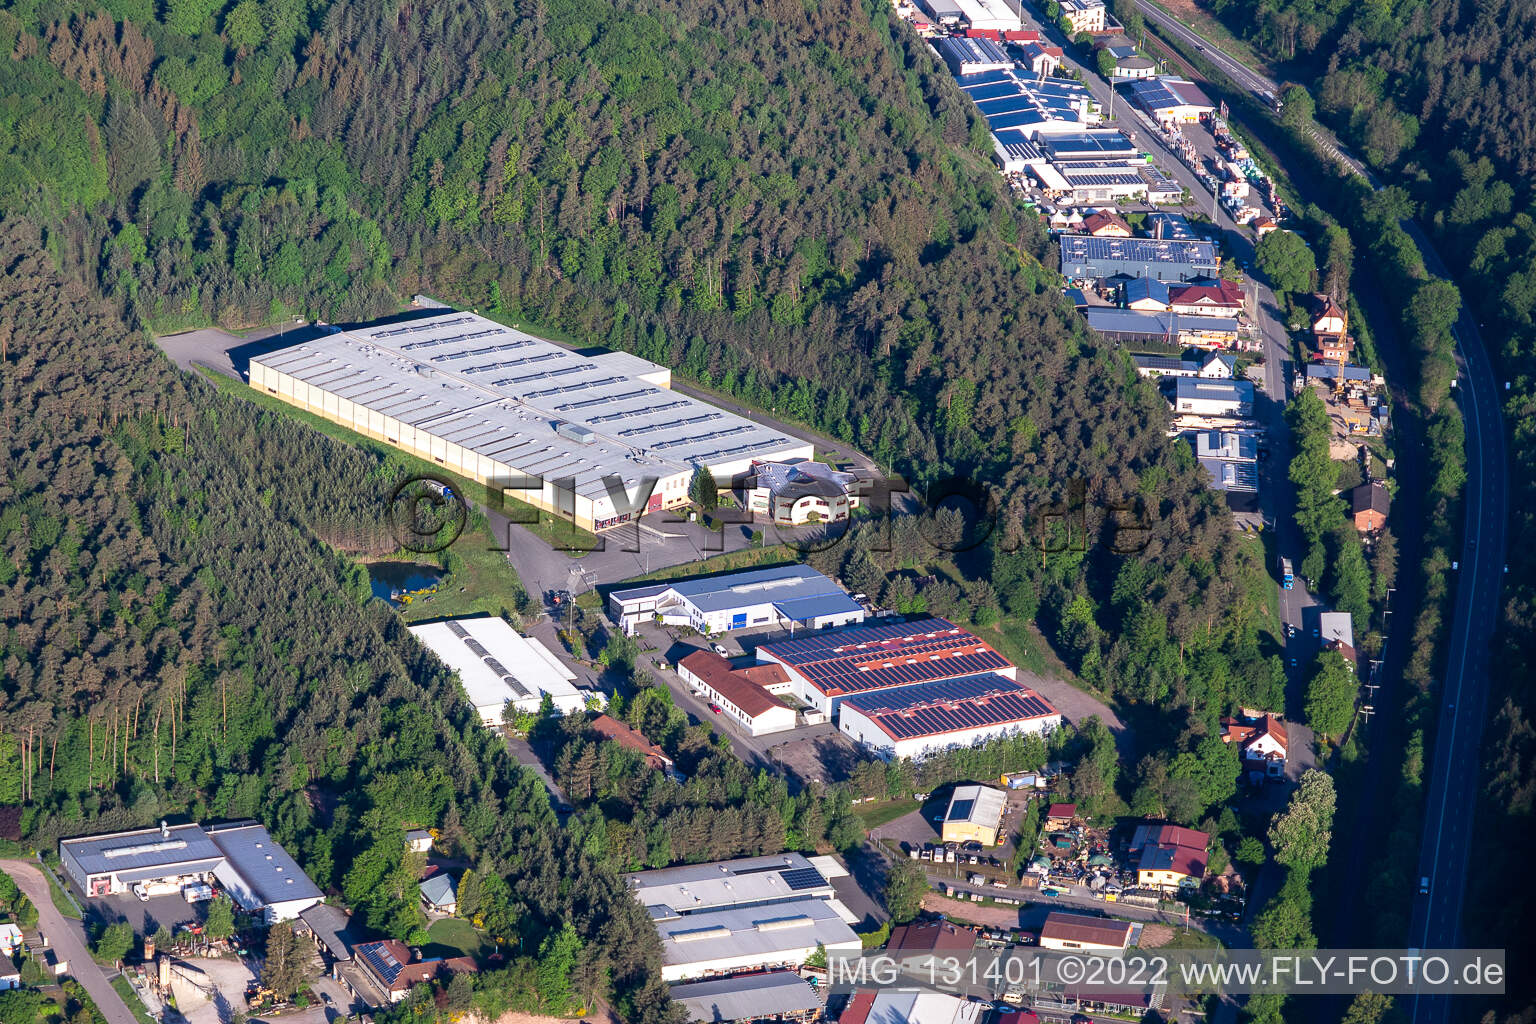 Schumacher Packaging GmbH plant Hauenstein in Hauenstein in the state Rhineland-Palatinate, Germany